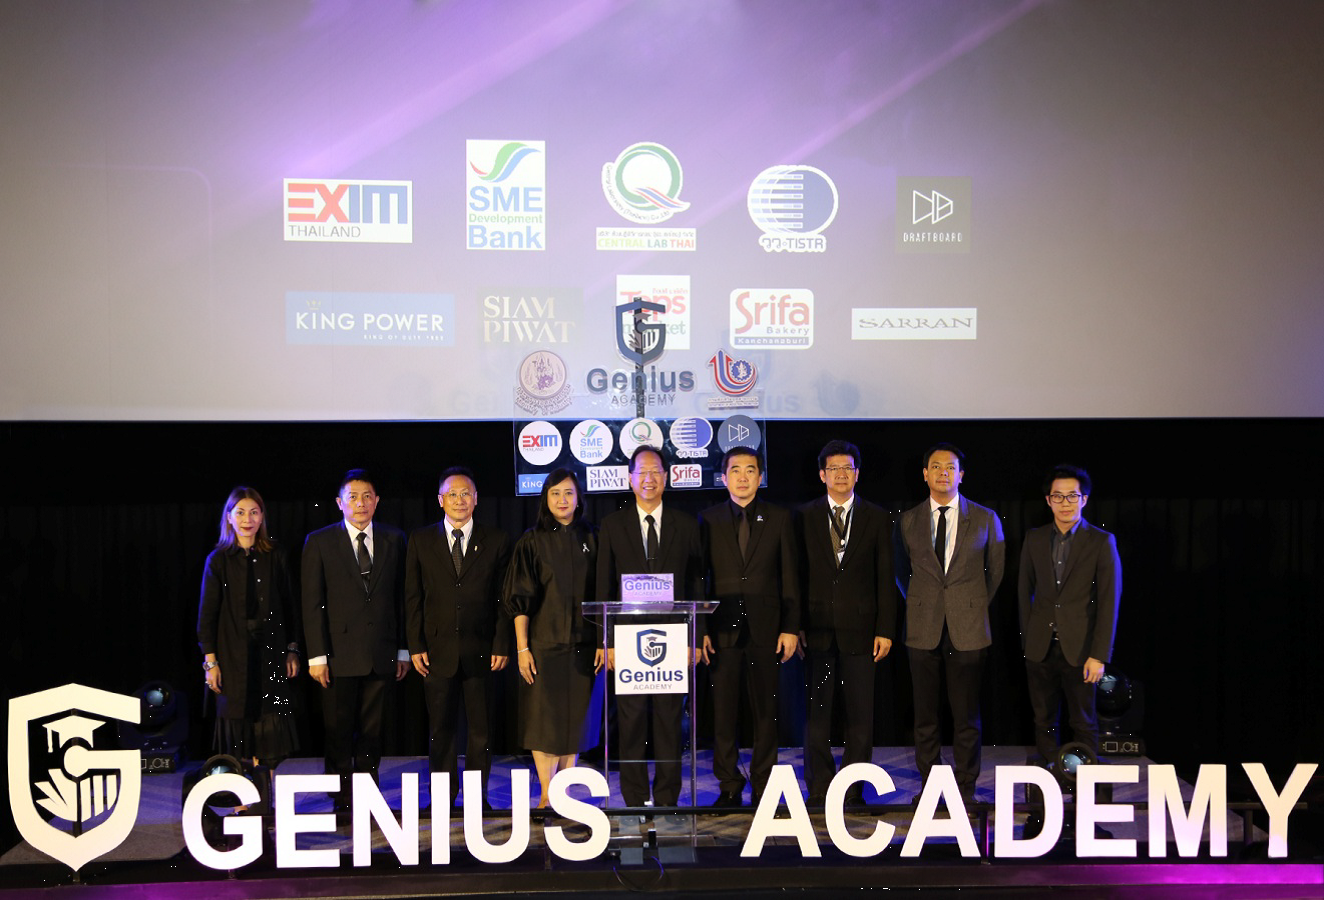 EXIM BANK ร่วมโครงการ Genius Academy 2017 สร้างอัจฉริยะทางธุรกิจให้ผู้ประกอบการไทย